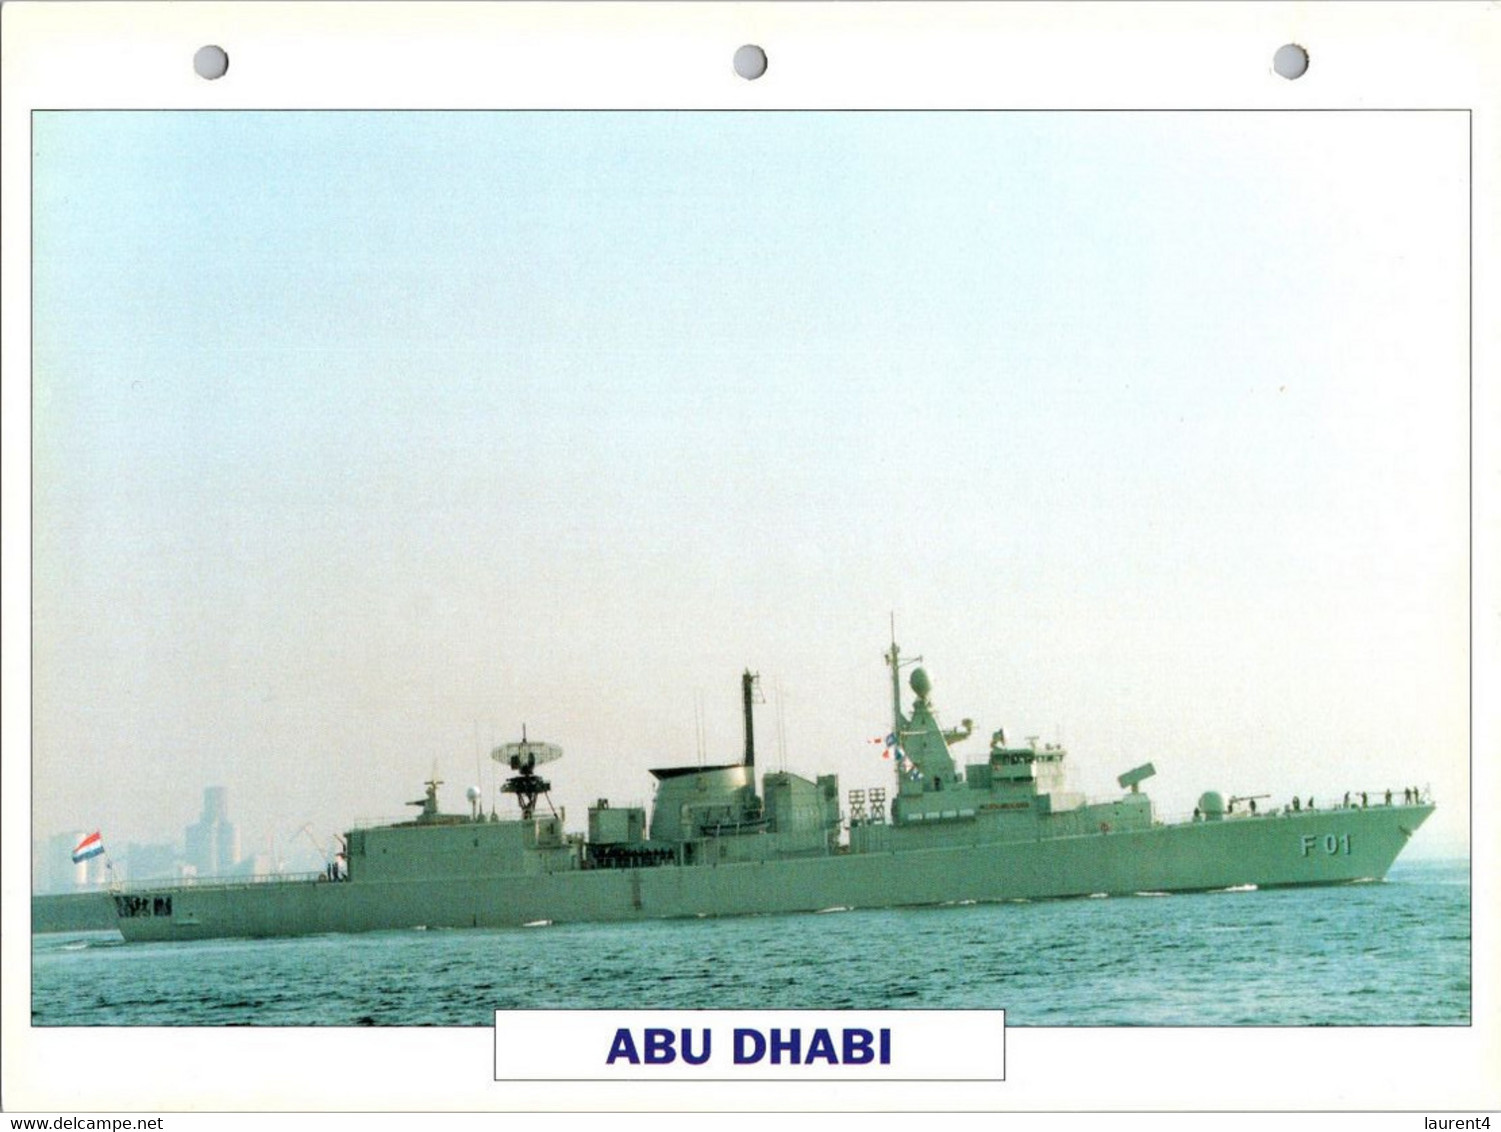 (25 X 19 Cm) (10-9-2021) - U - Photo And Info Sheet On Warship - UAE United Arab Emirates Navy - Abu Dhabi - Bateaux